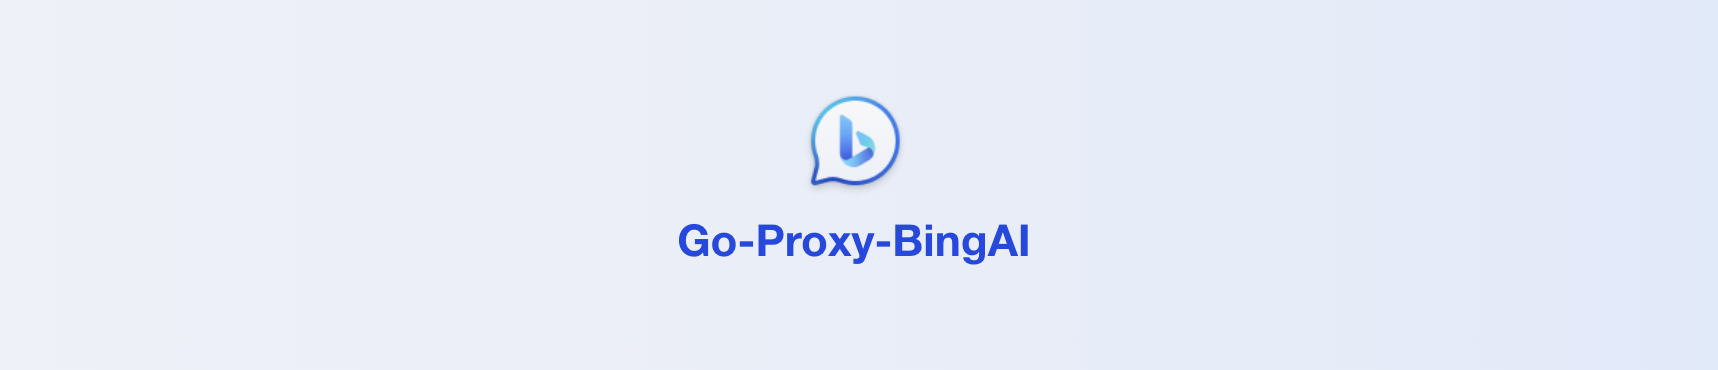 Go-Proxy-BingAI